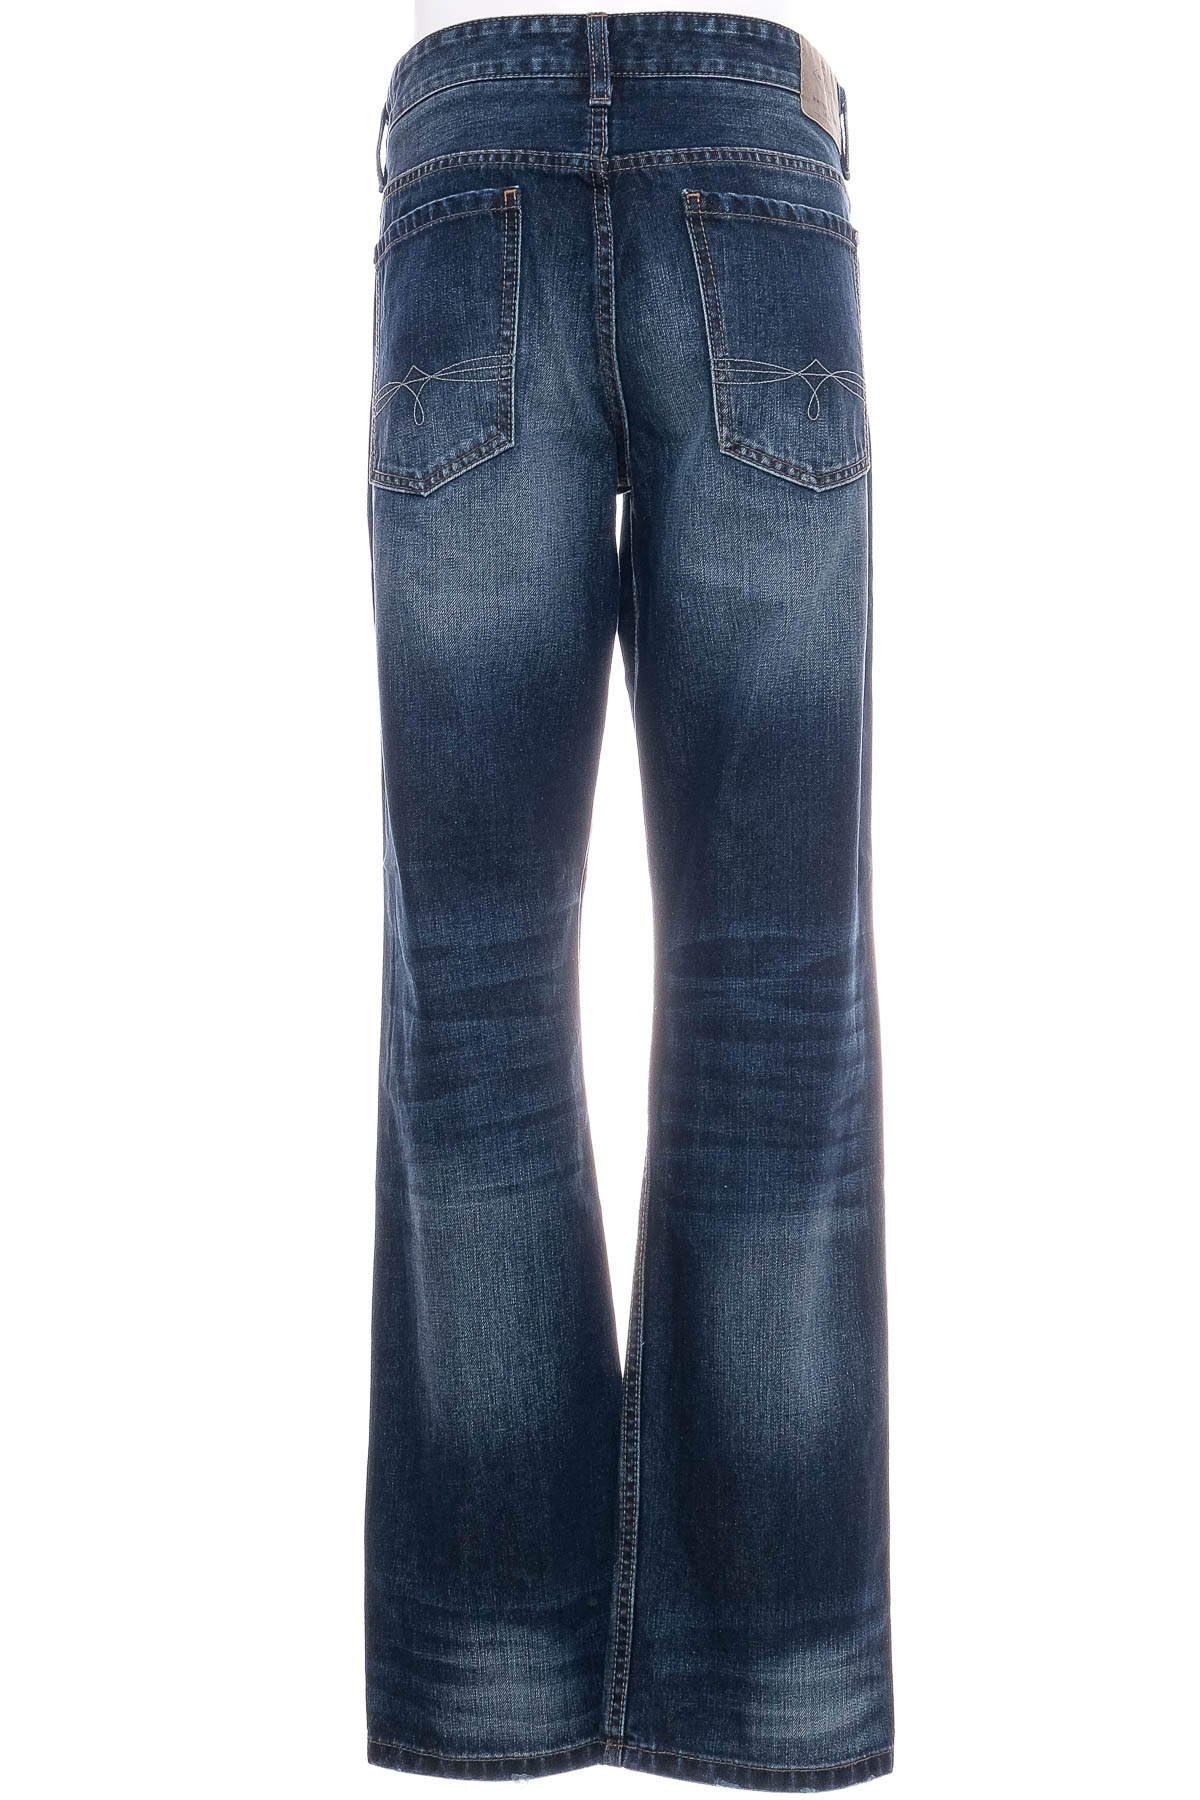 Men's jeans - S.Oliver - 1